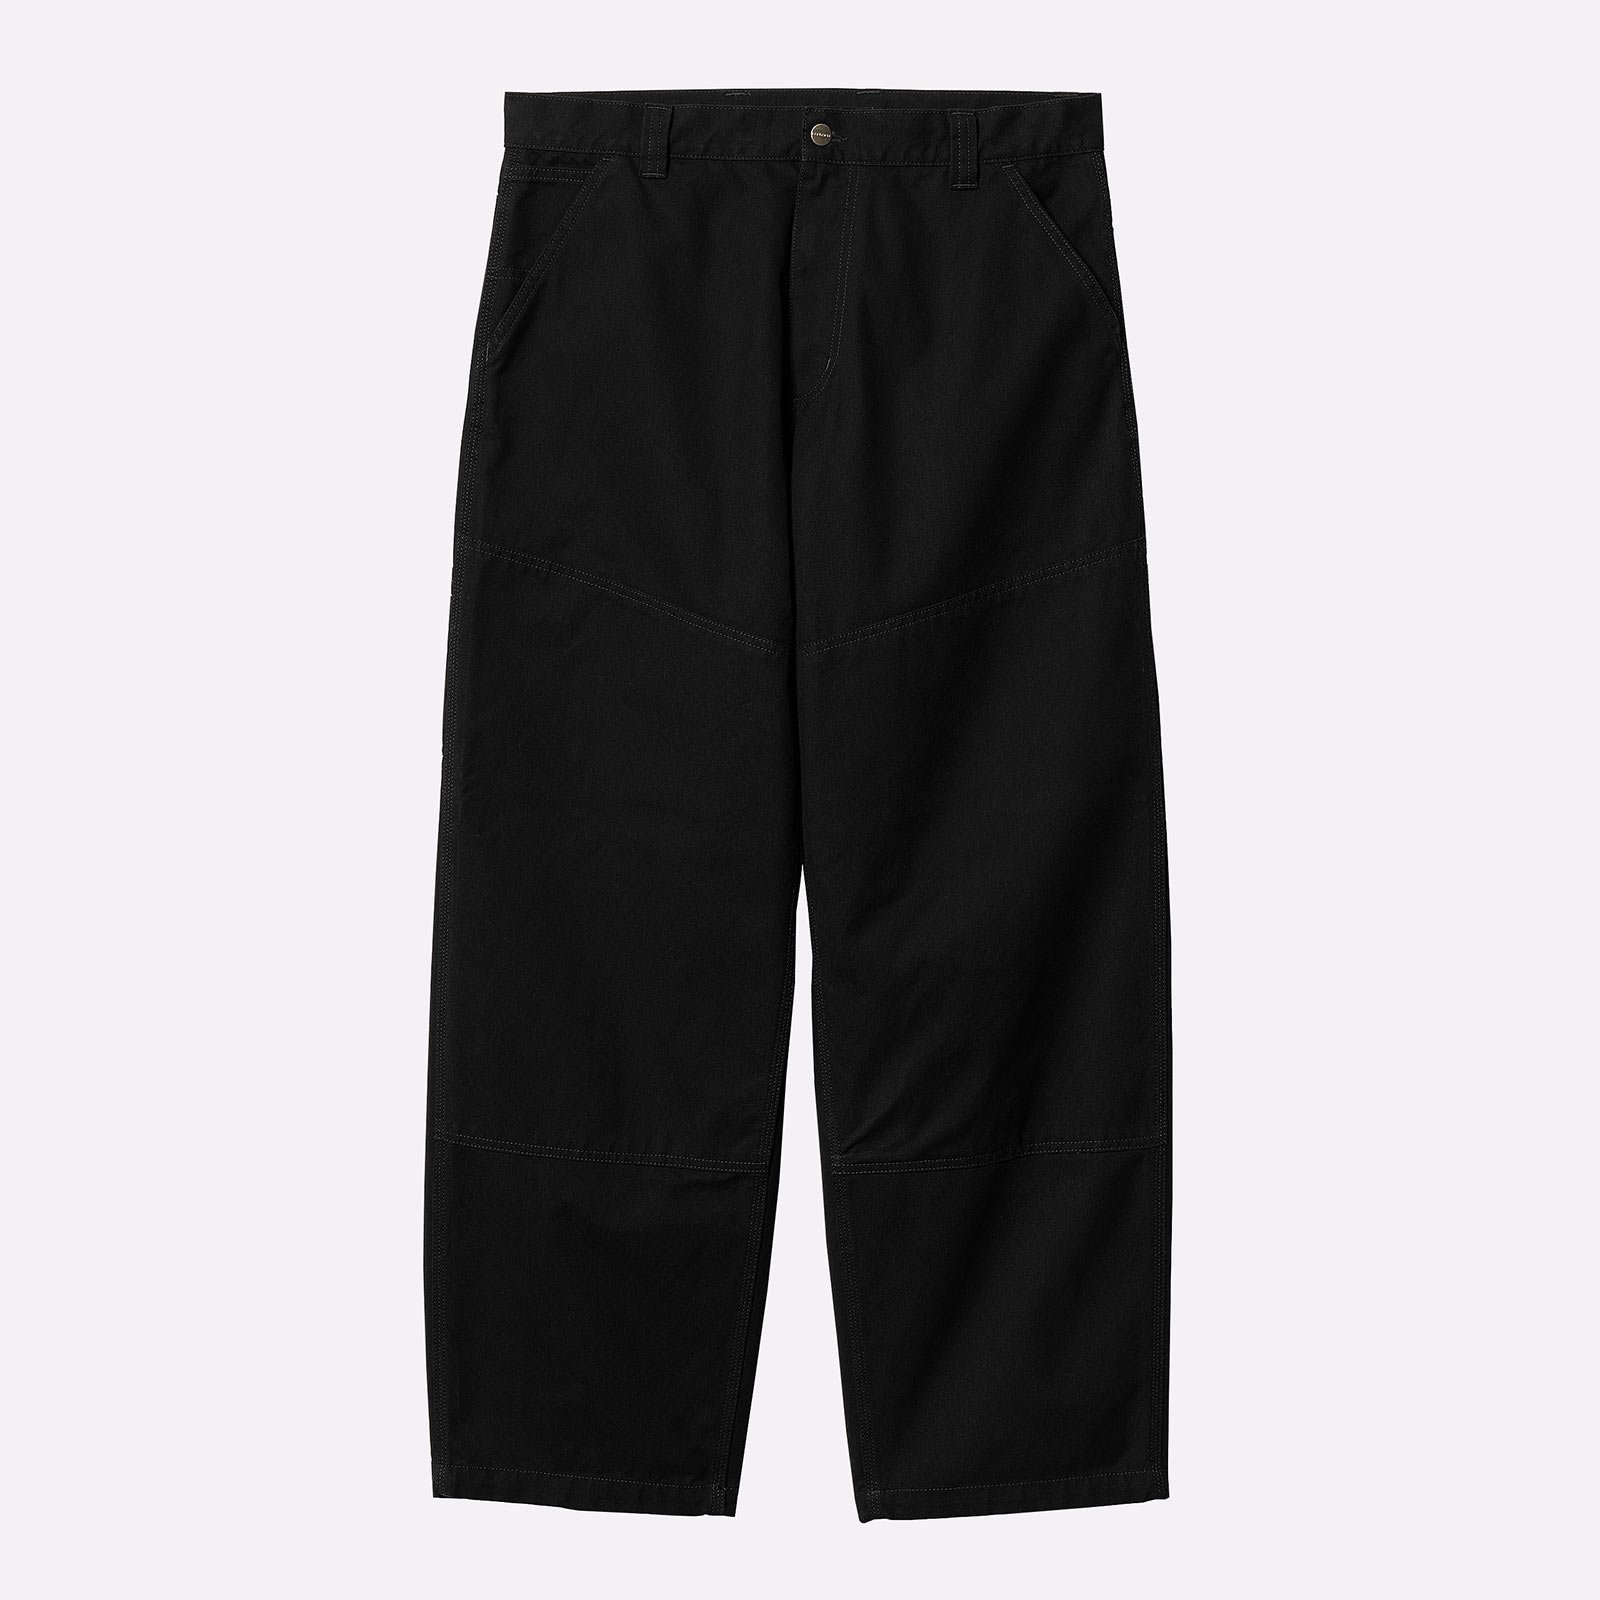 мужские брюки Carhartt WIP Wide Panel Pant  (I031393-black)  - цена, описание, фото 1